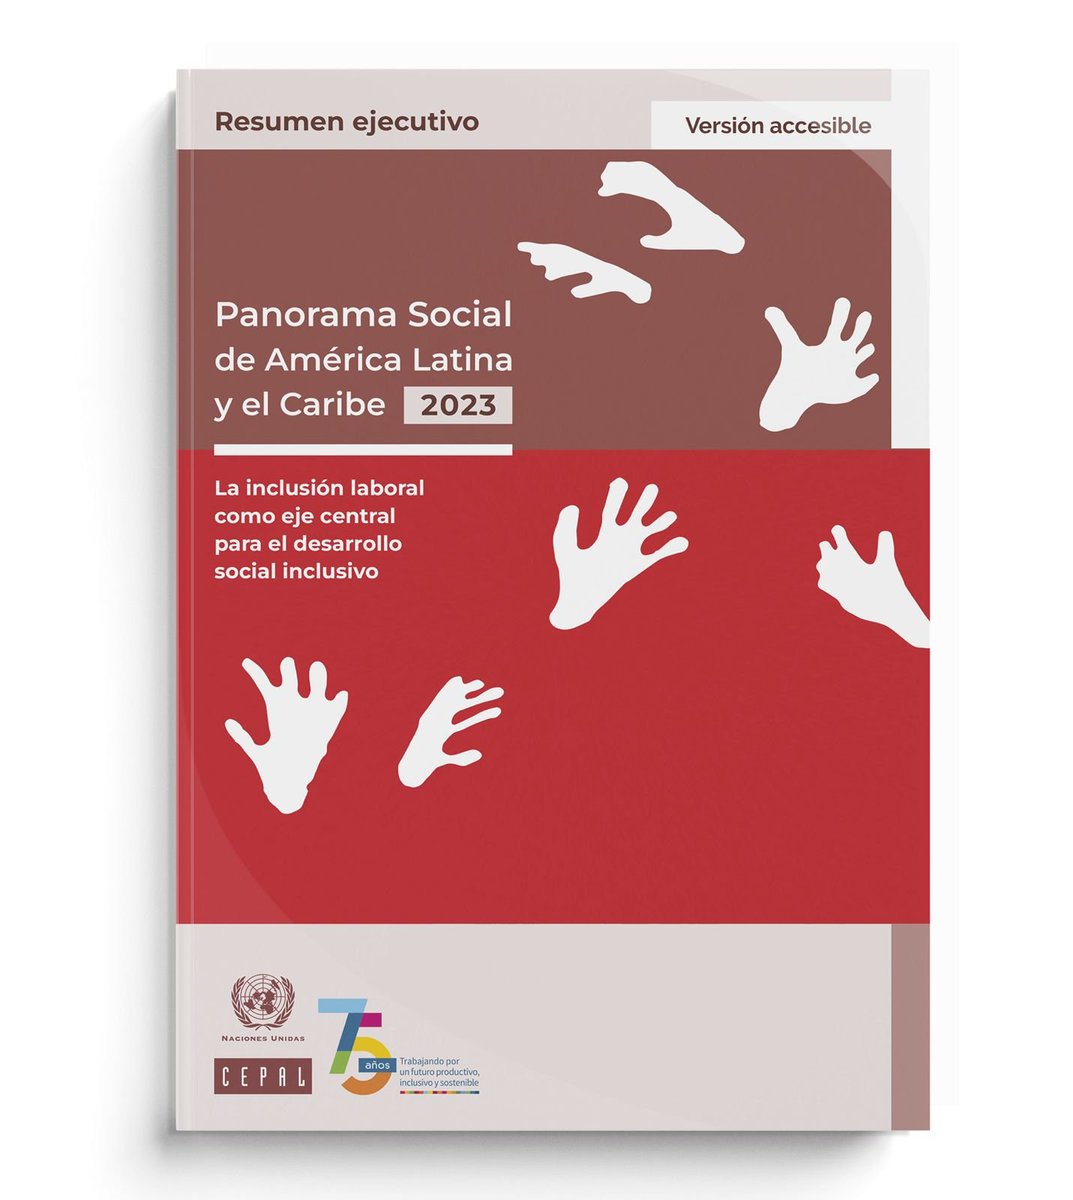 📕¡YA está disponible la versión accesible del #PanoramaSocial de #AméricaLatina y el #Caribe 2023! En este informe anual de la #CEPAL se abordan los desafíos de la #InclusiónLaboral como eje central para el desarrollo social inclusivo. 🔽¡Descárgalo! bit.ly/3yrrhW3